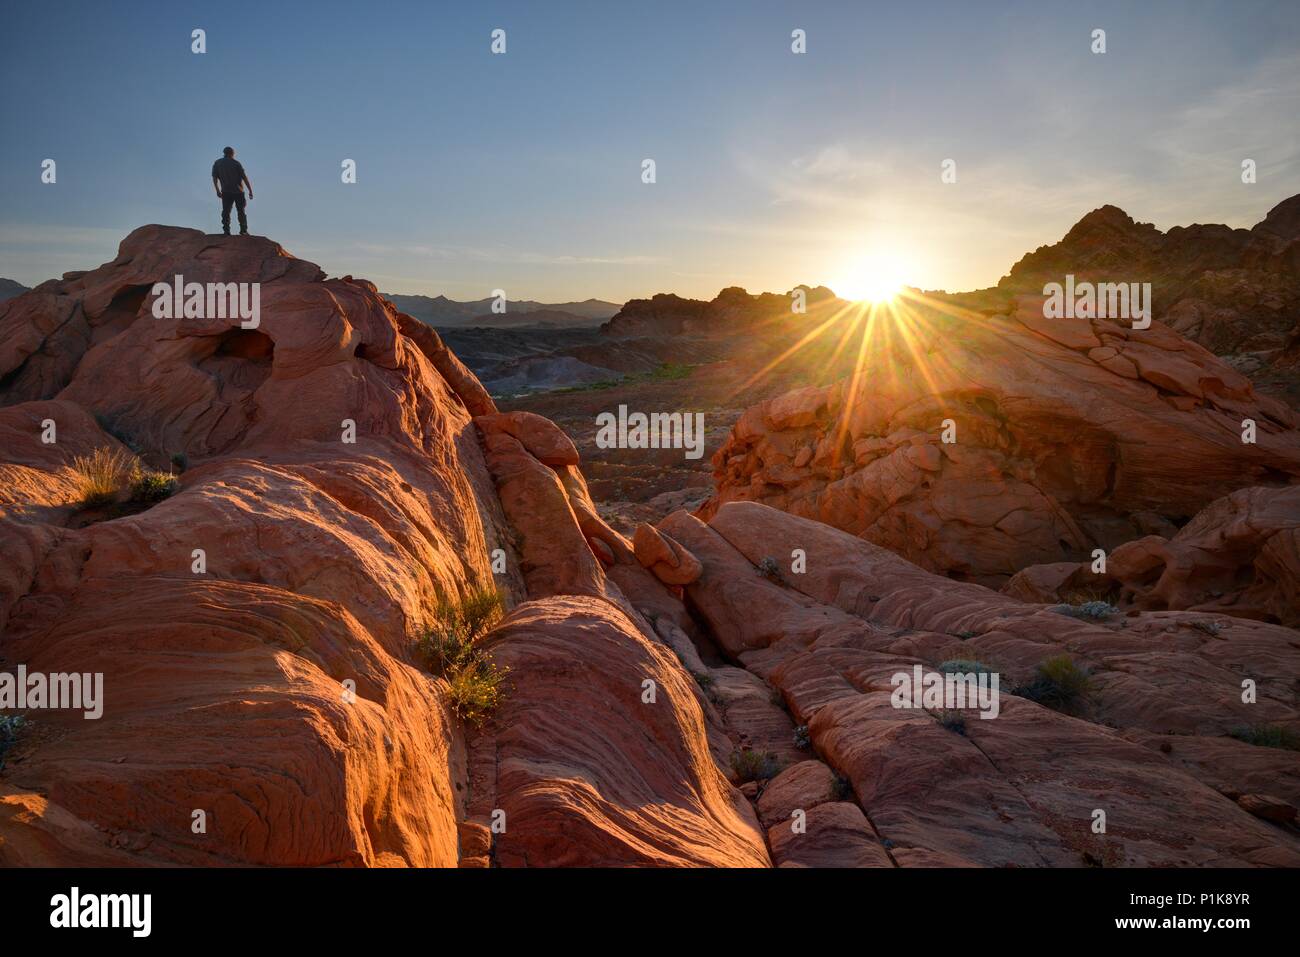 Mann auf Felsen stehend, Valley of Fire State Park, Nevada, USA Stockfoto